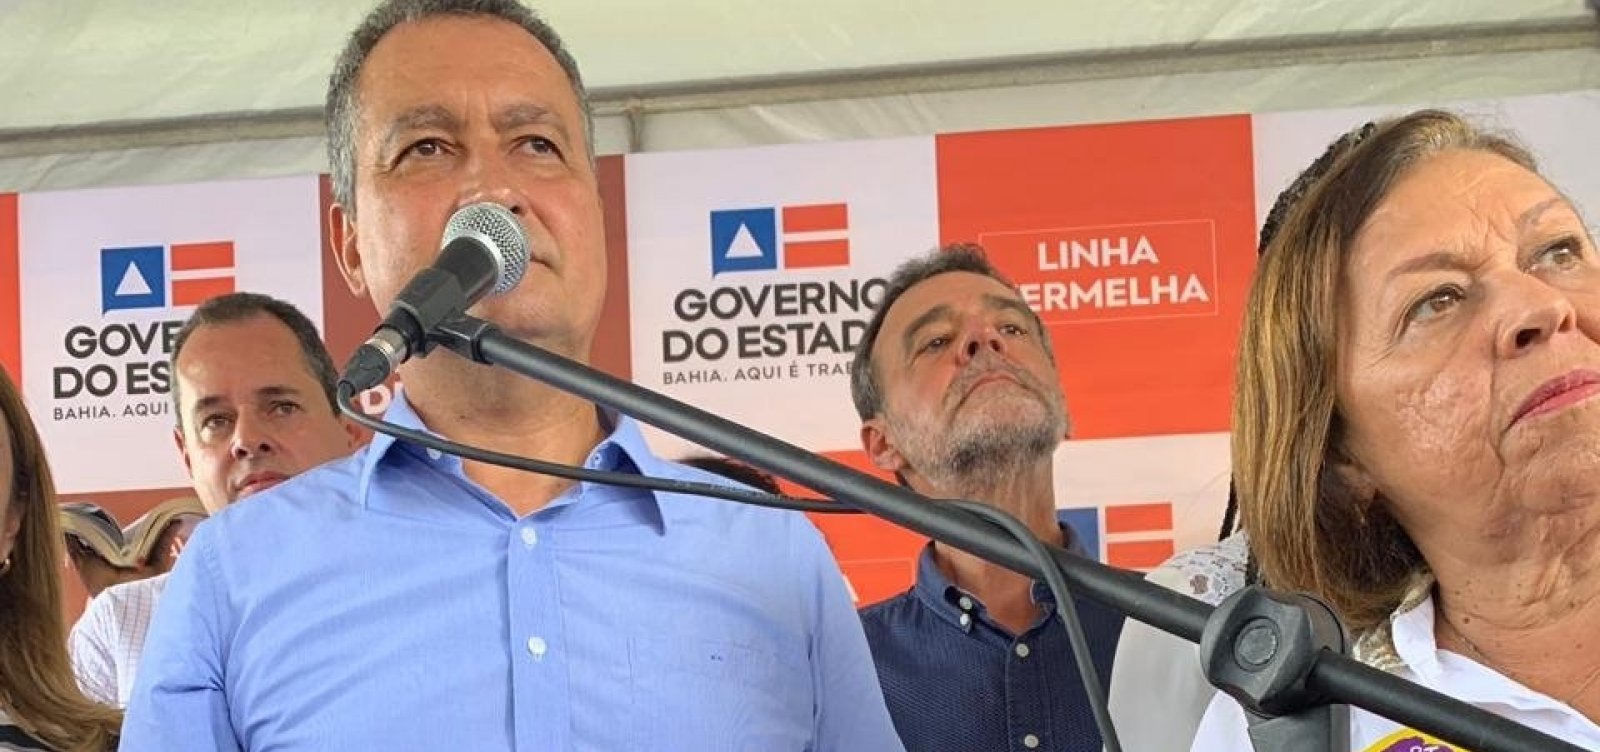 Rui diz que governo federal não honrou compromissos e deu 'calote' na Bahia